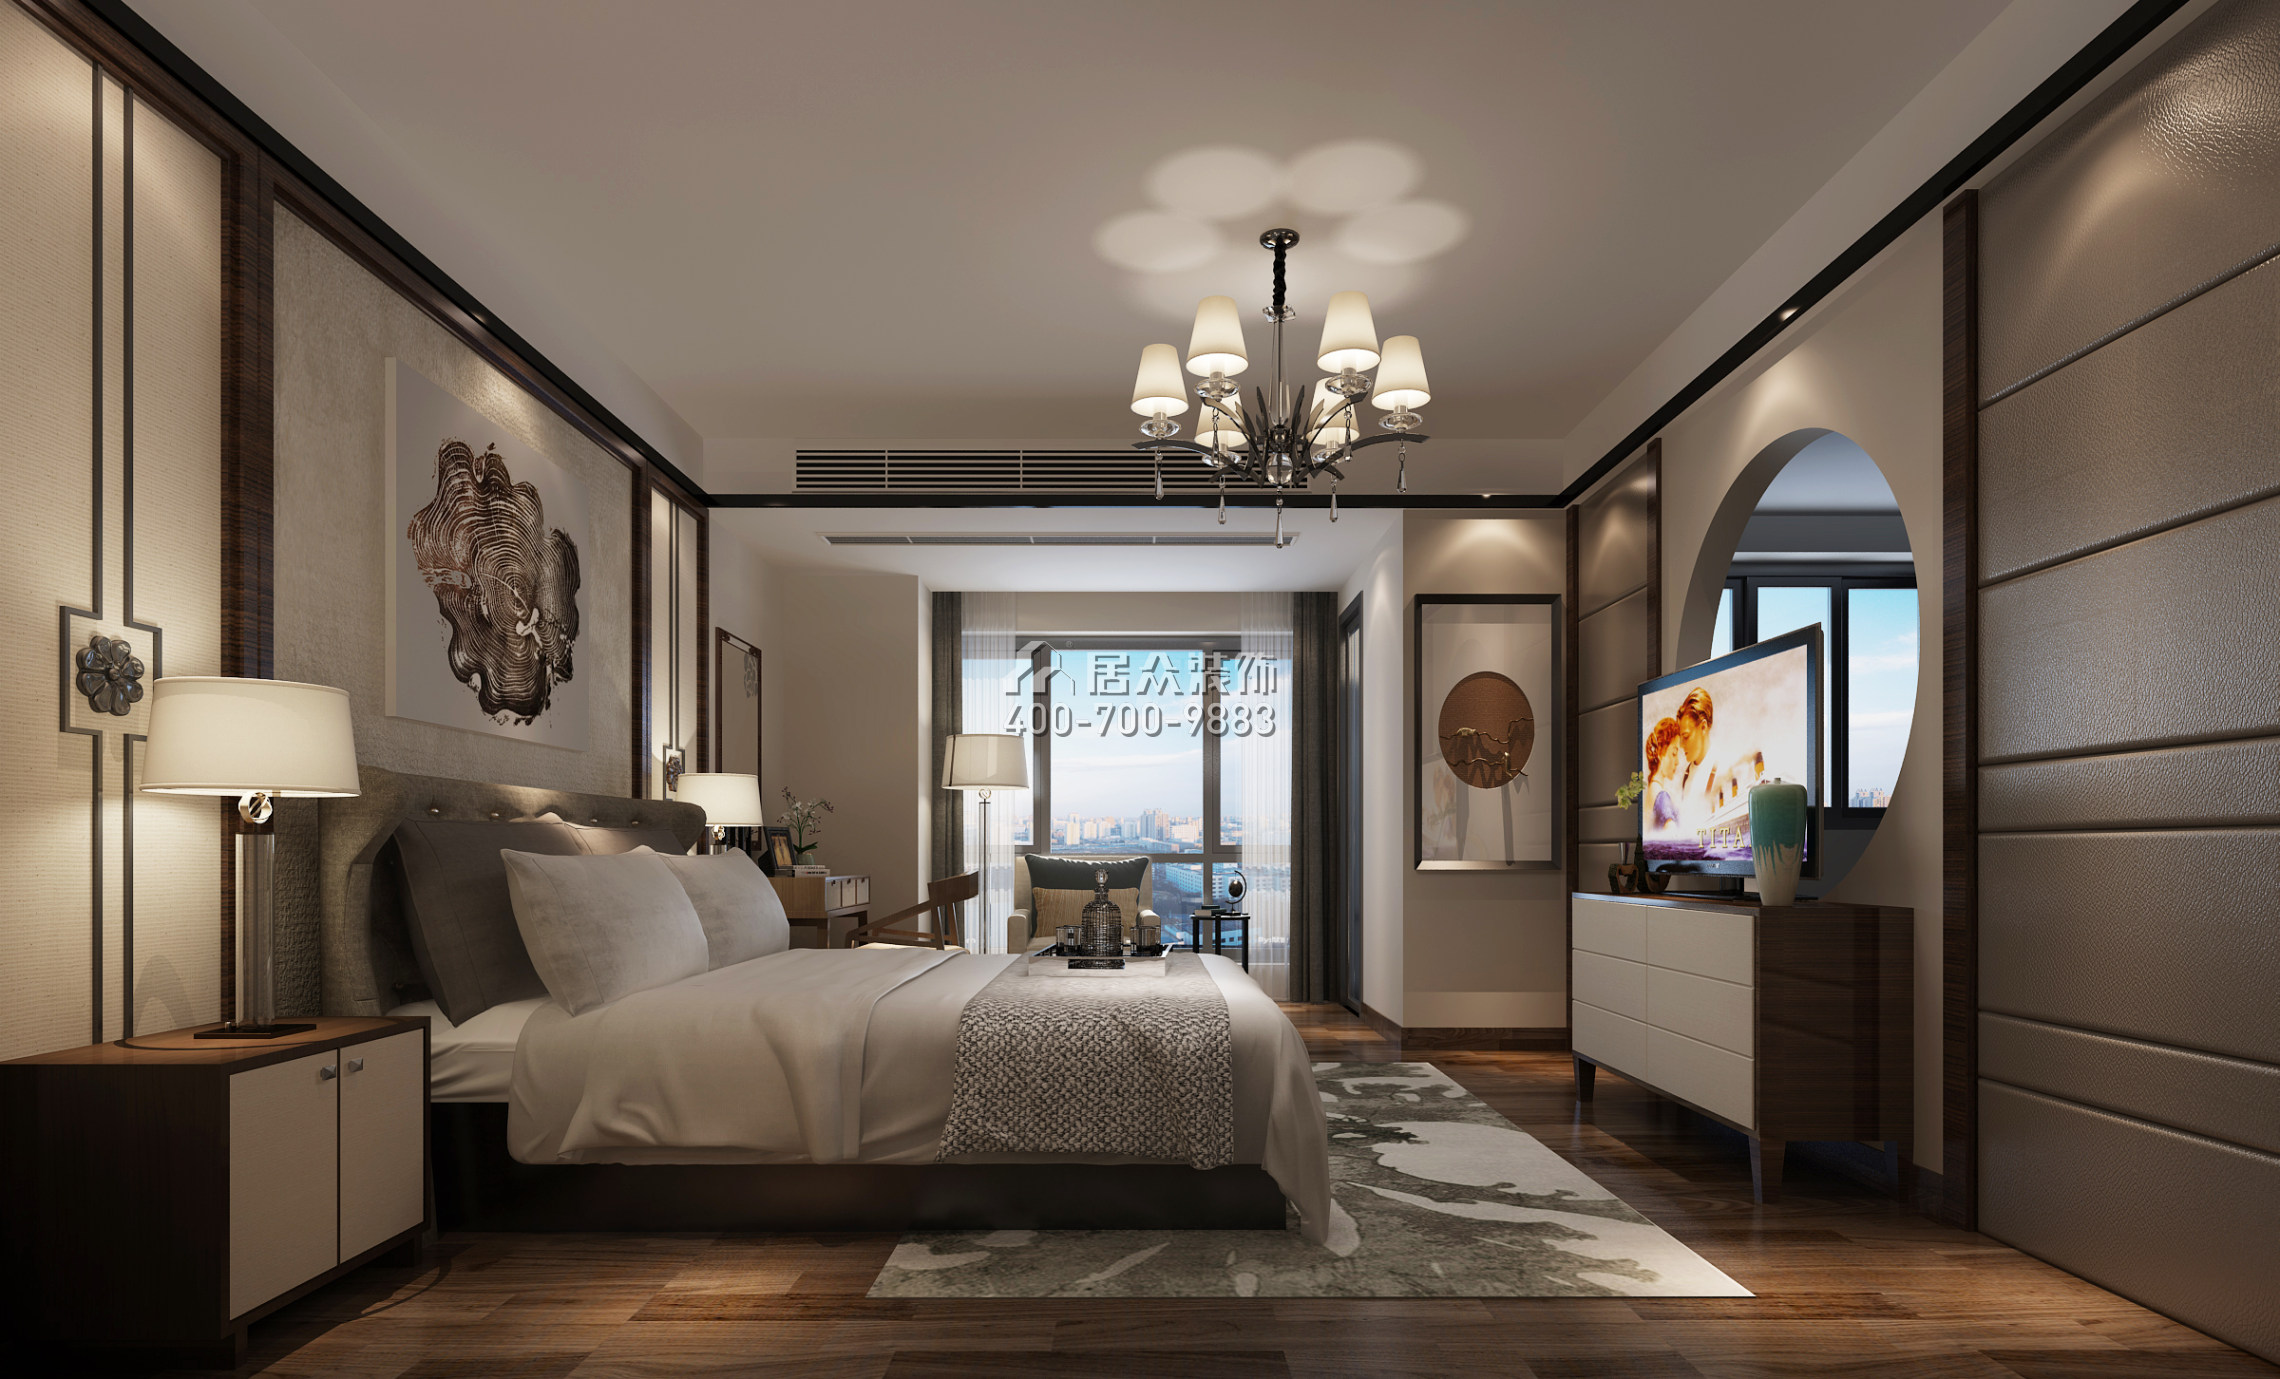 君华御府145平方米中式风格复式户型卧室装修效果图